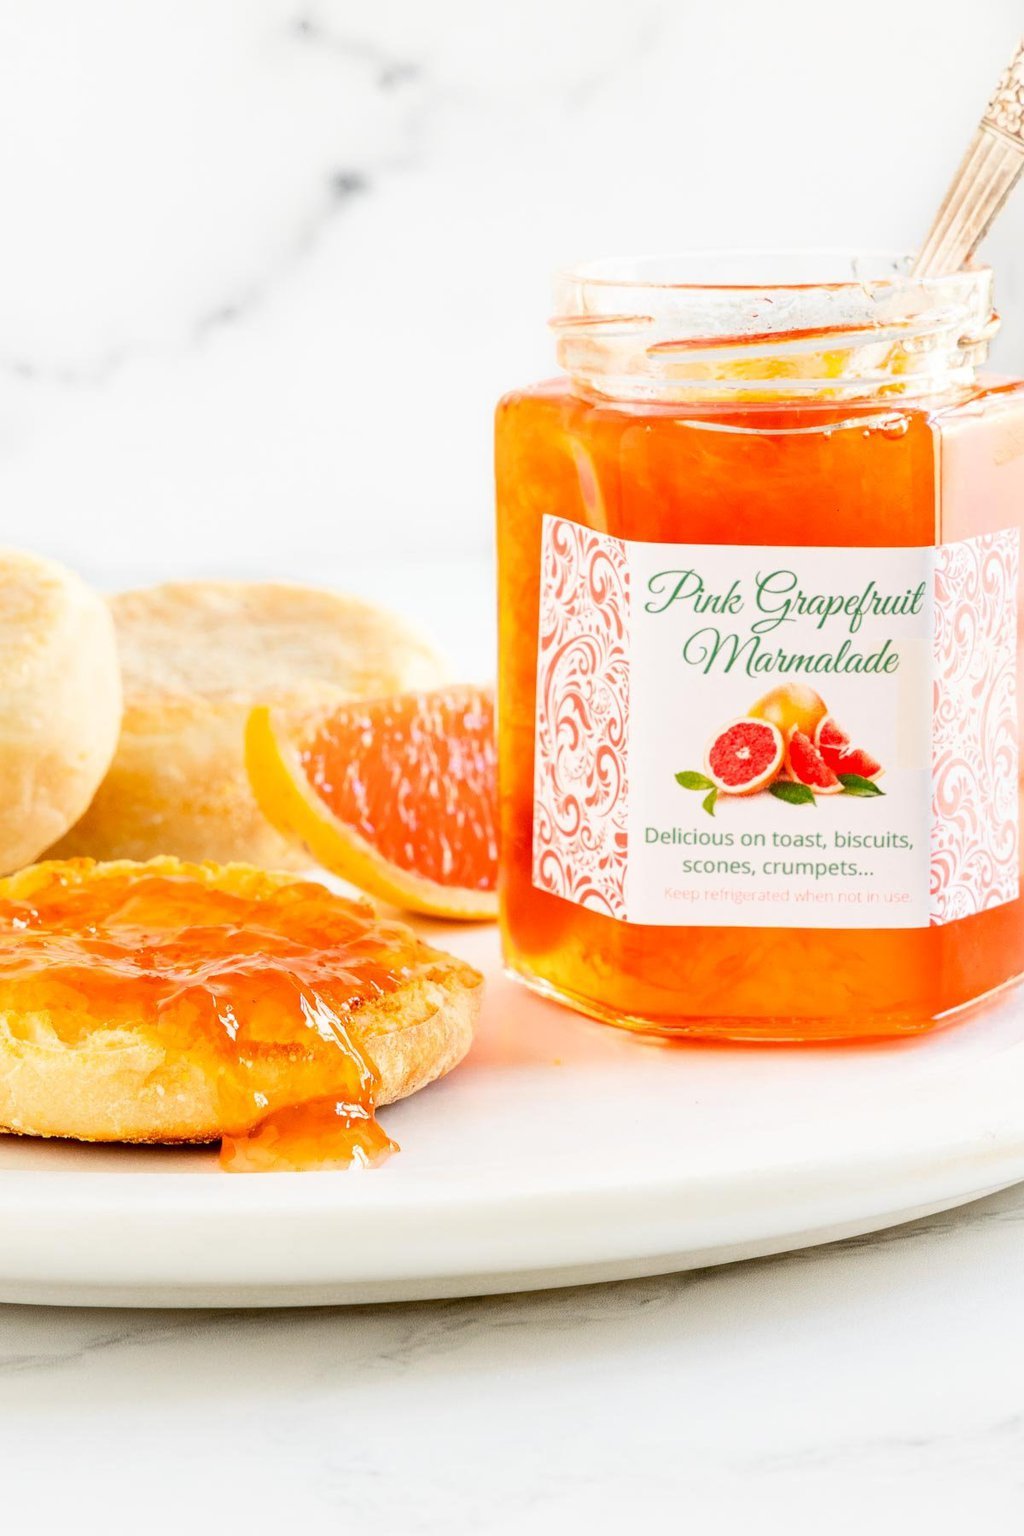 Vertical closeup photo of a jar of Pink Grapefruit Marmalade next to an English muffin.